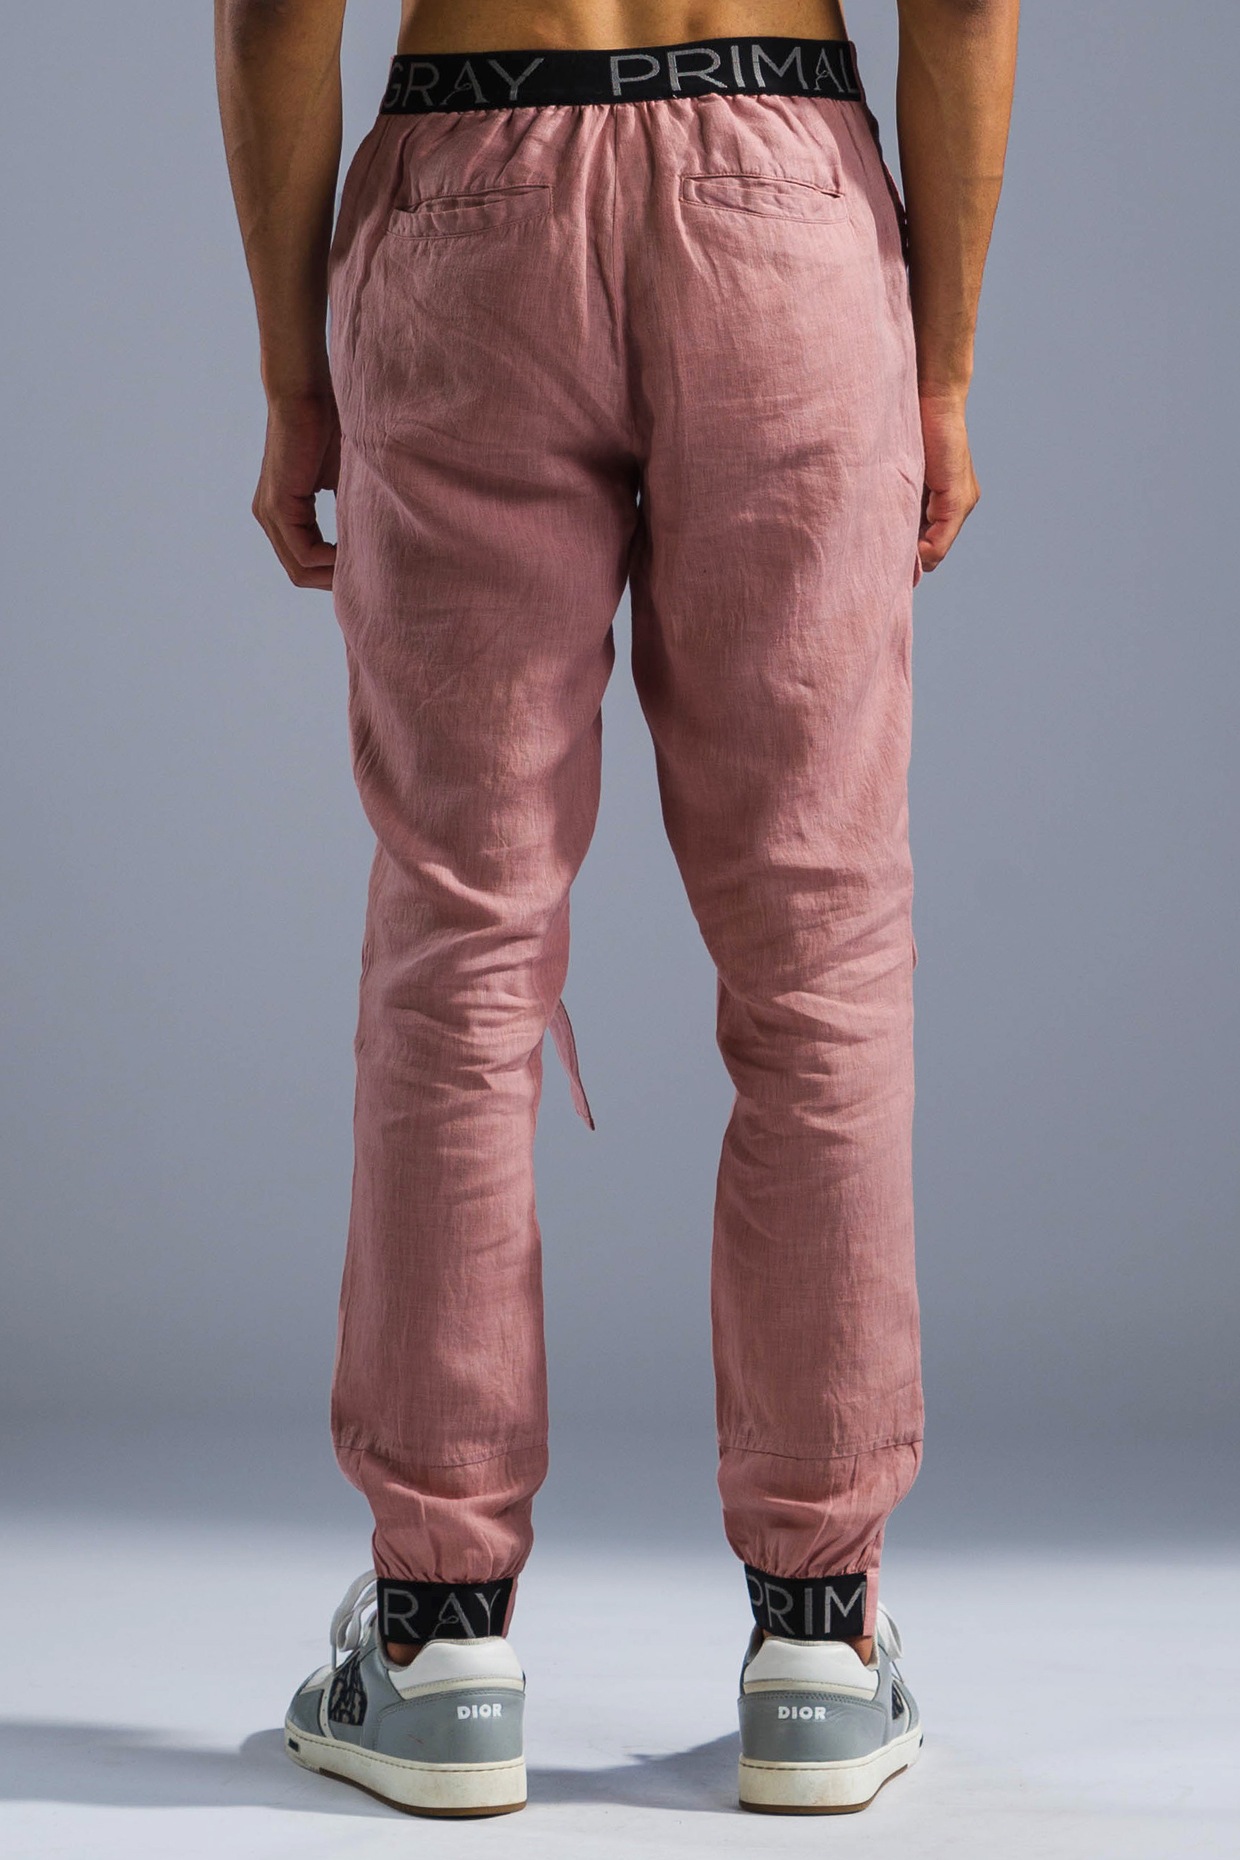 専門店品質 Amiur collar waist design pants グレー | ninelife.store